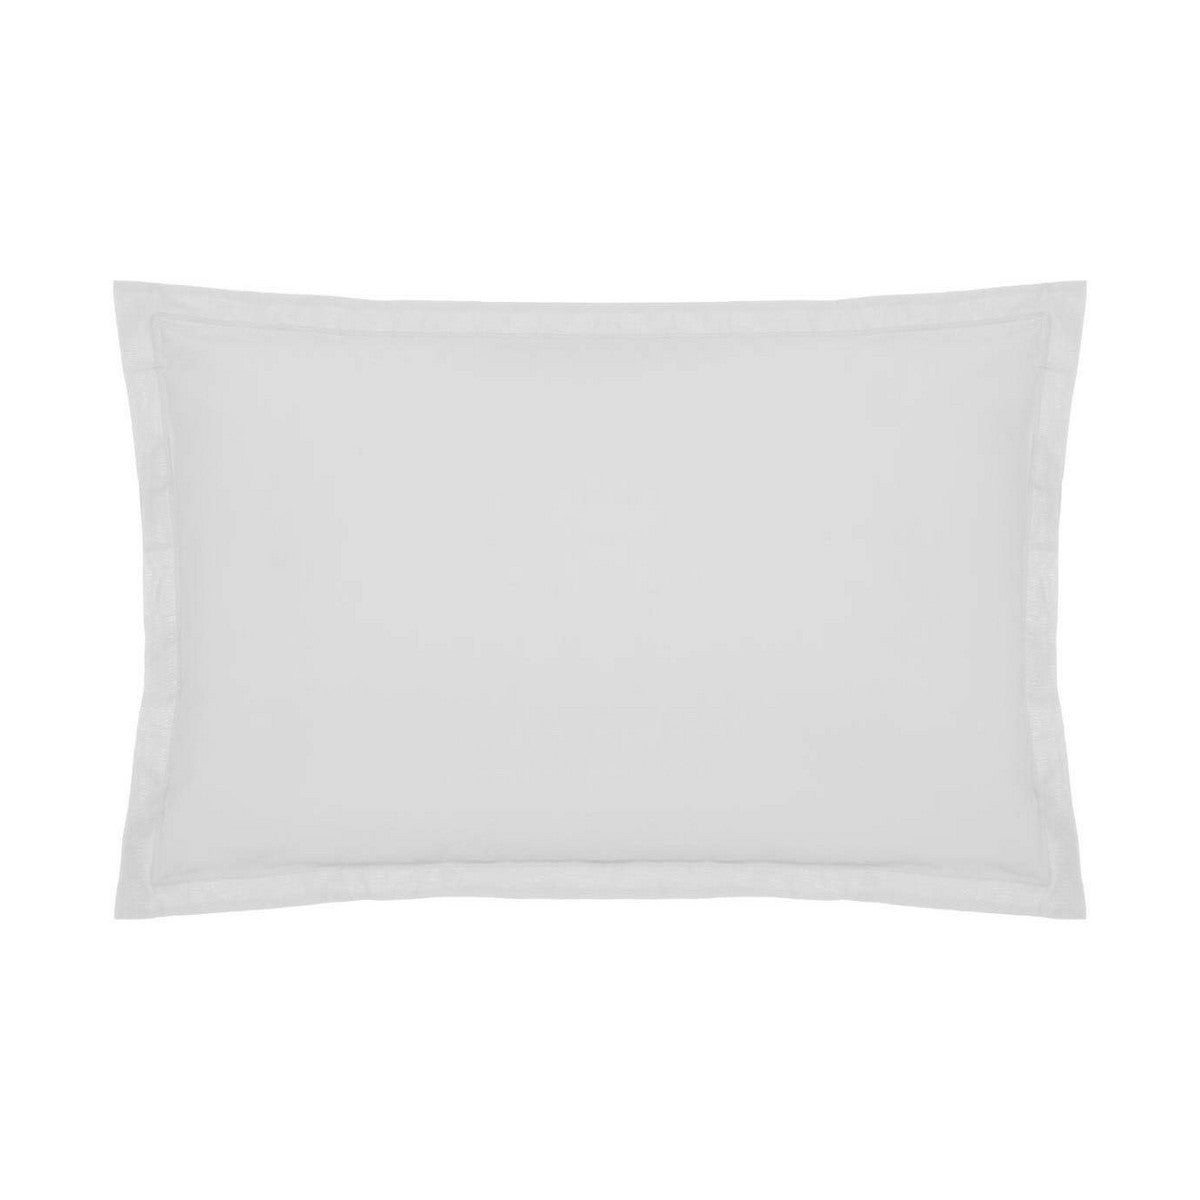 Pillowcase Atmosphera White Multicolour 70 x 50 cm